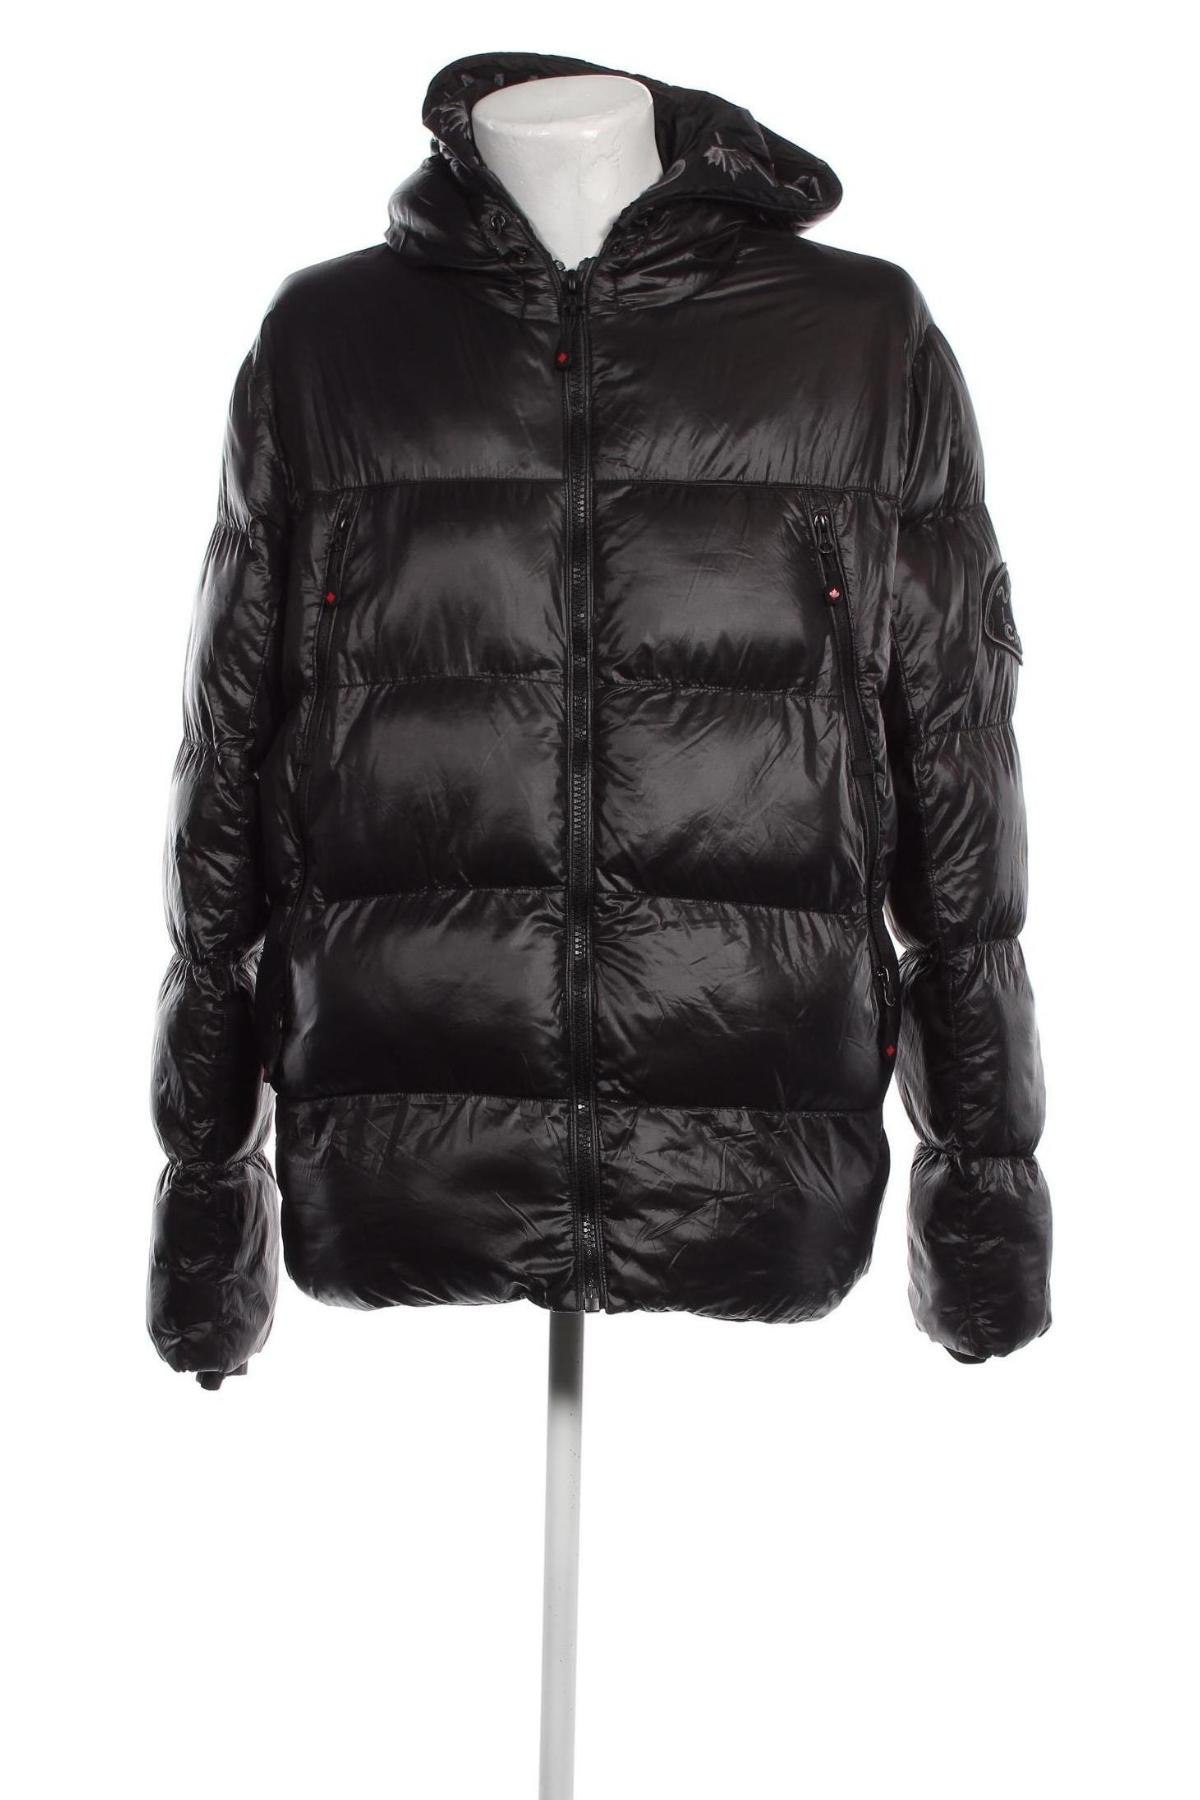 Pánska bunda  Zavetti Canada, Veľkosť XL, Farba Čierna, Cena  31,30 €